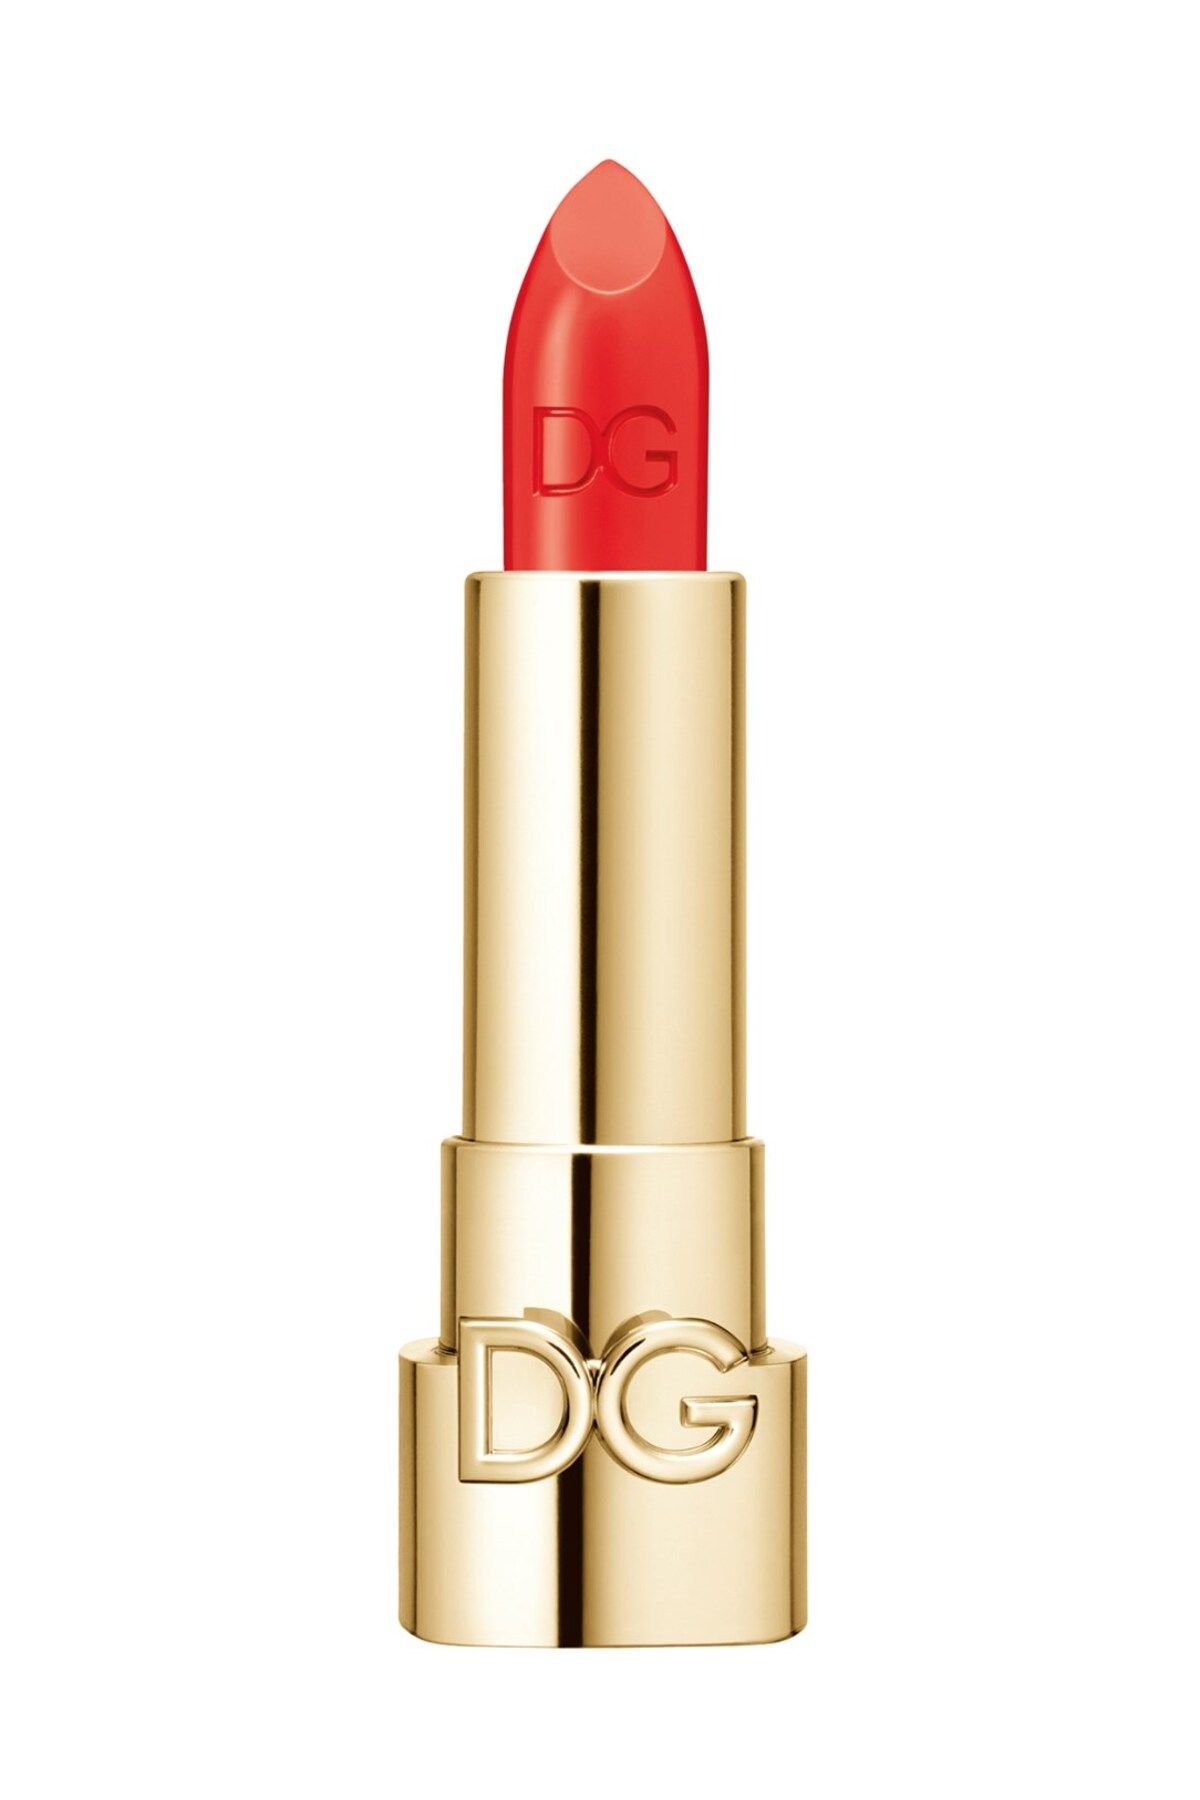 Dolce &Gabbana The Only One Lumınous Colour Lıpstıck Orange Vıbes